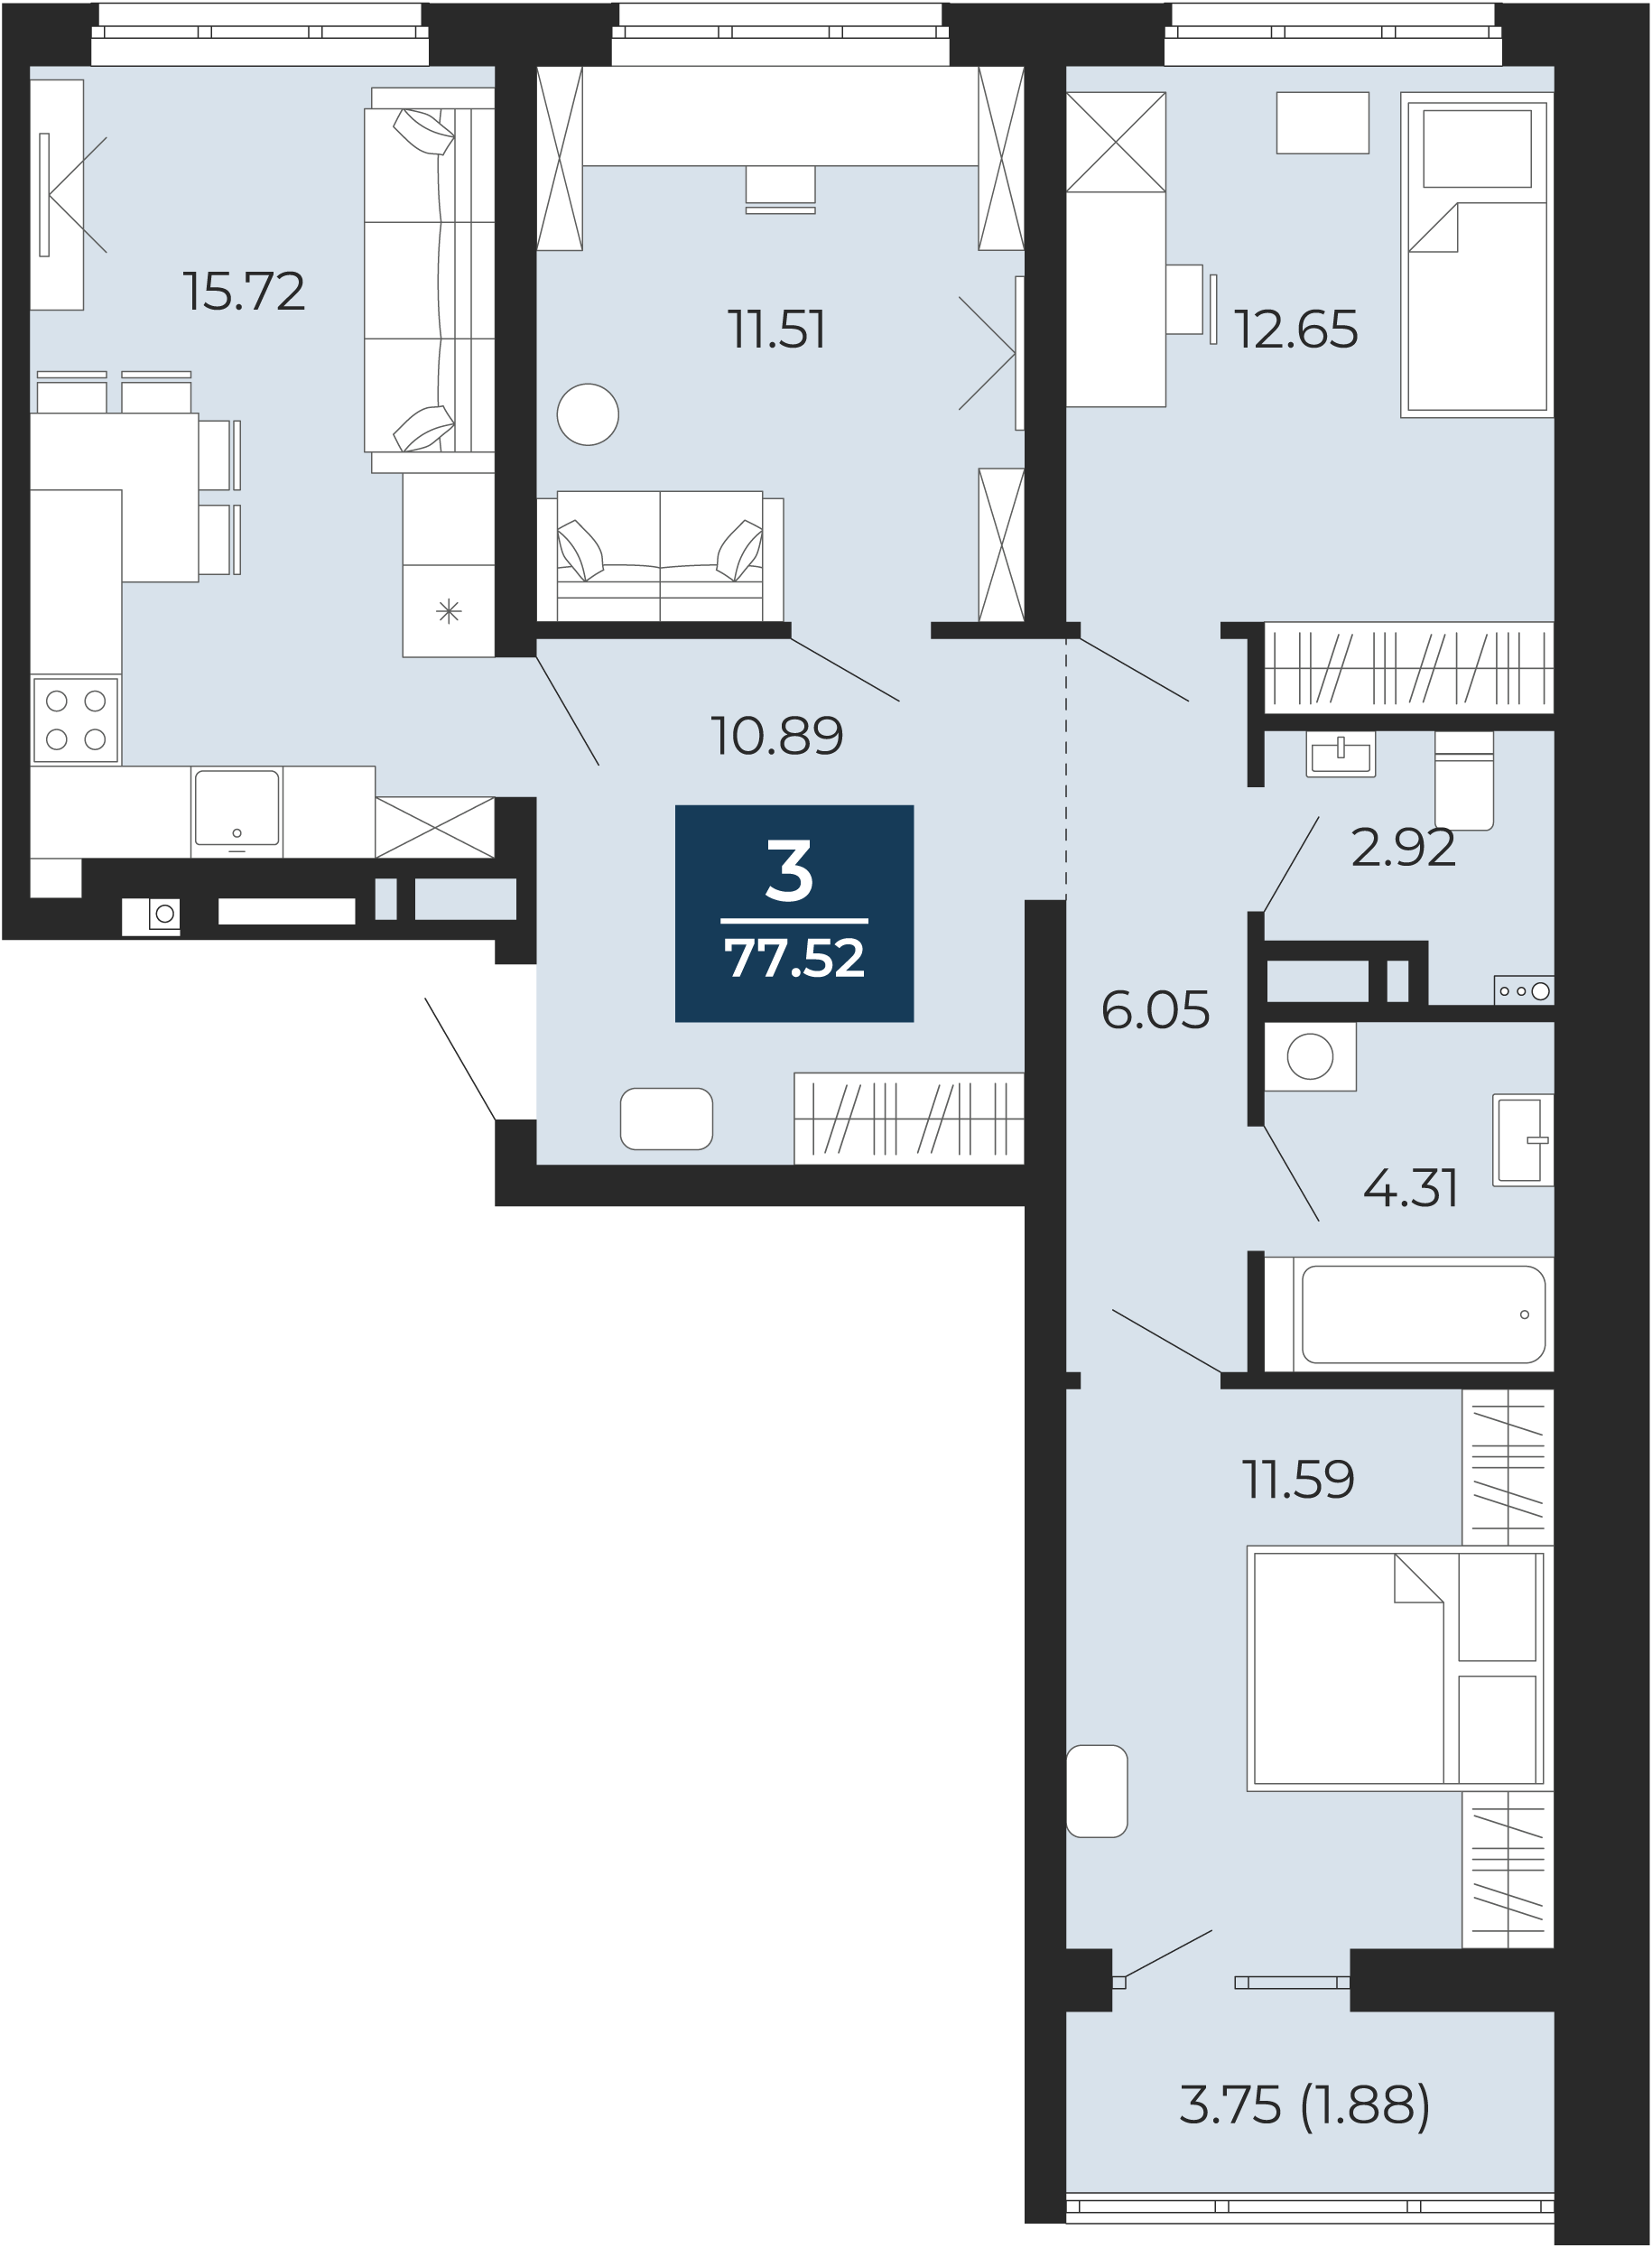 Квартира № 218, 3-комнатная, 77.52 кв. м, 8 этаж